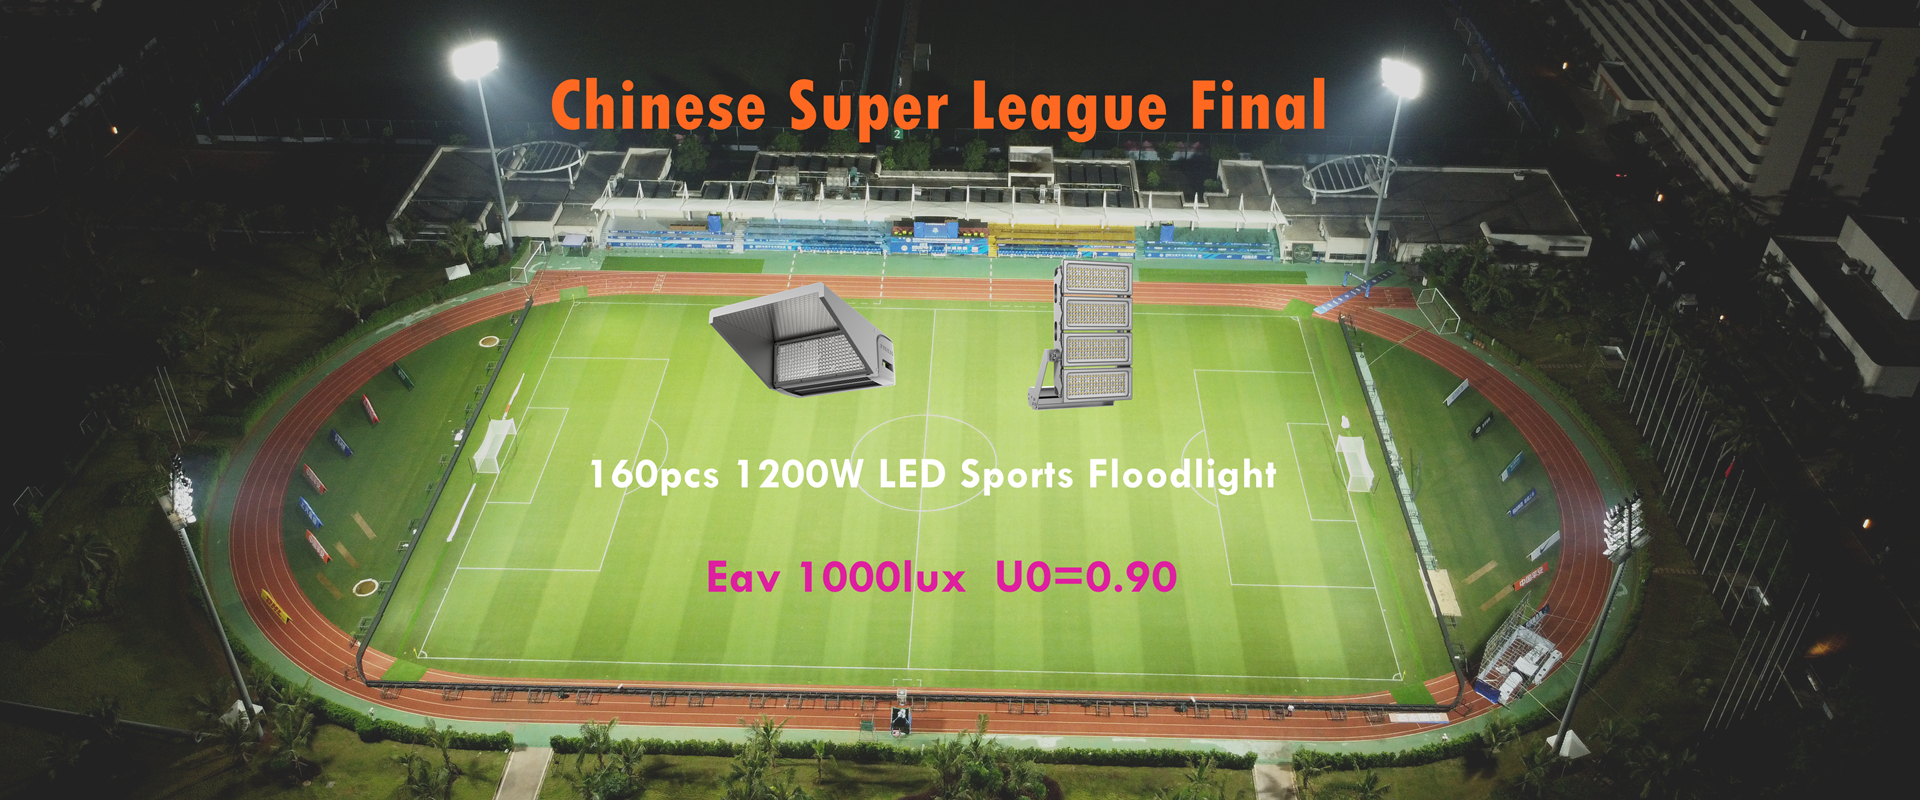 हायको फुटबॉल स्टेडियममध्ये चीनी सुपर लीग 2022 साठी 1200W एलईडी स्पोर्ट्स फ्लडलाइट